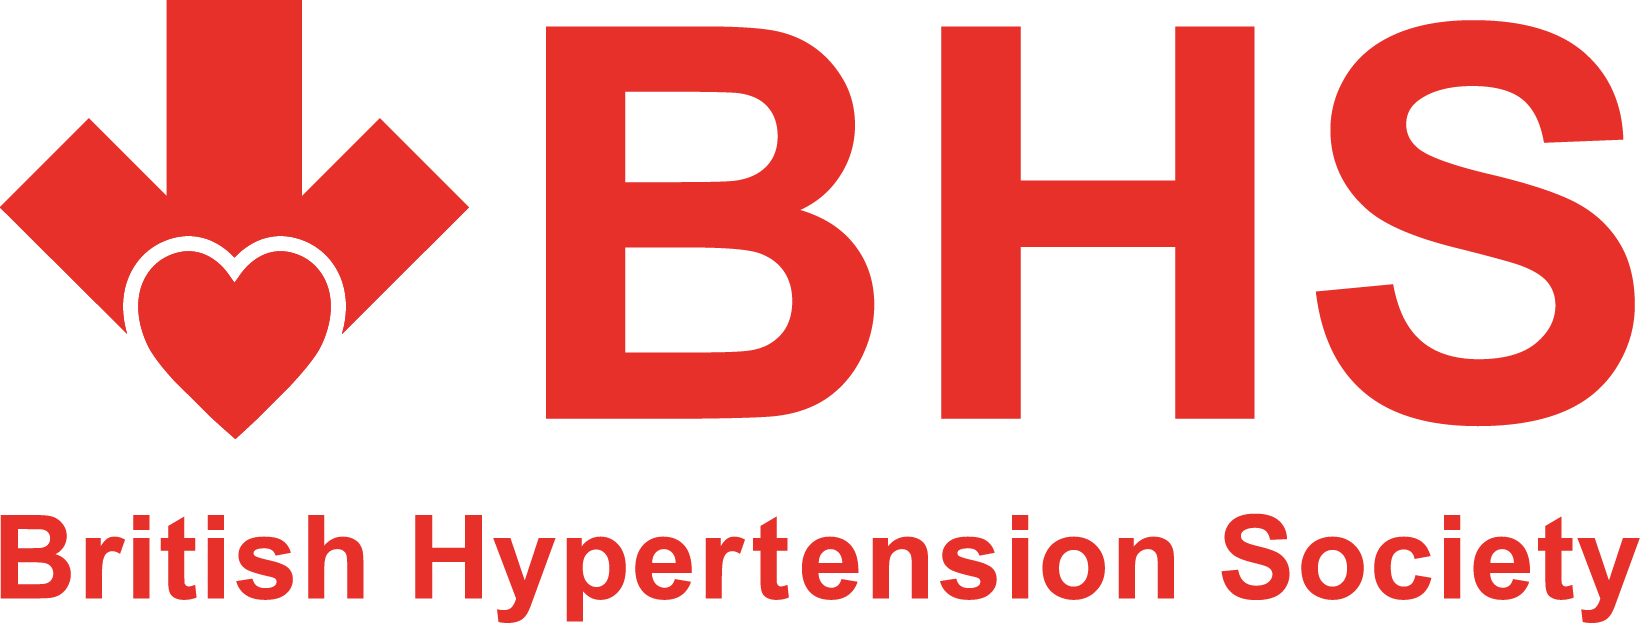 British Hypertension Society logo